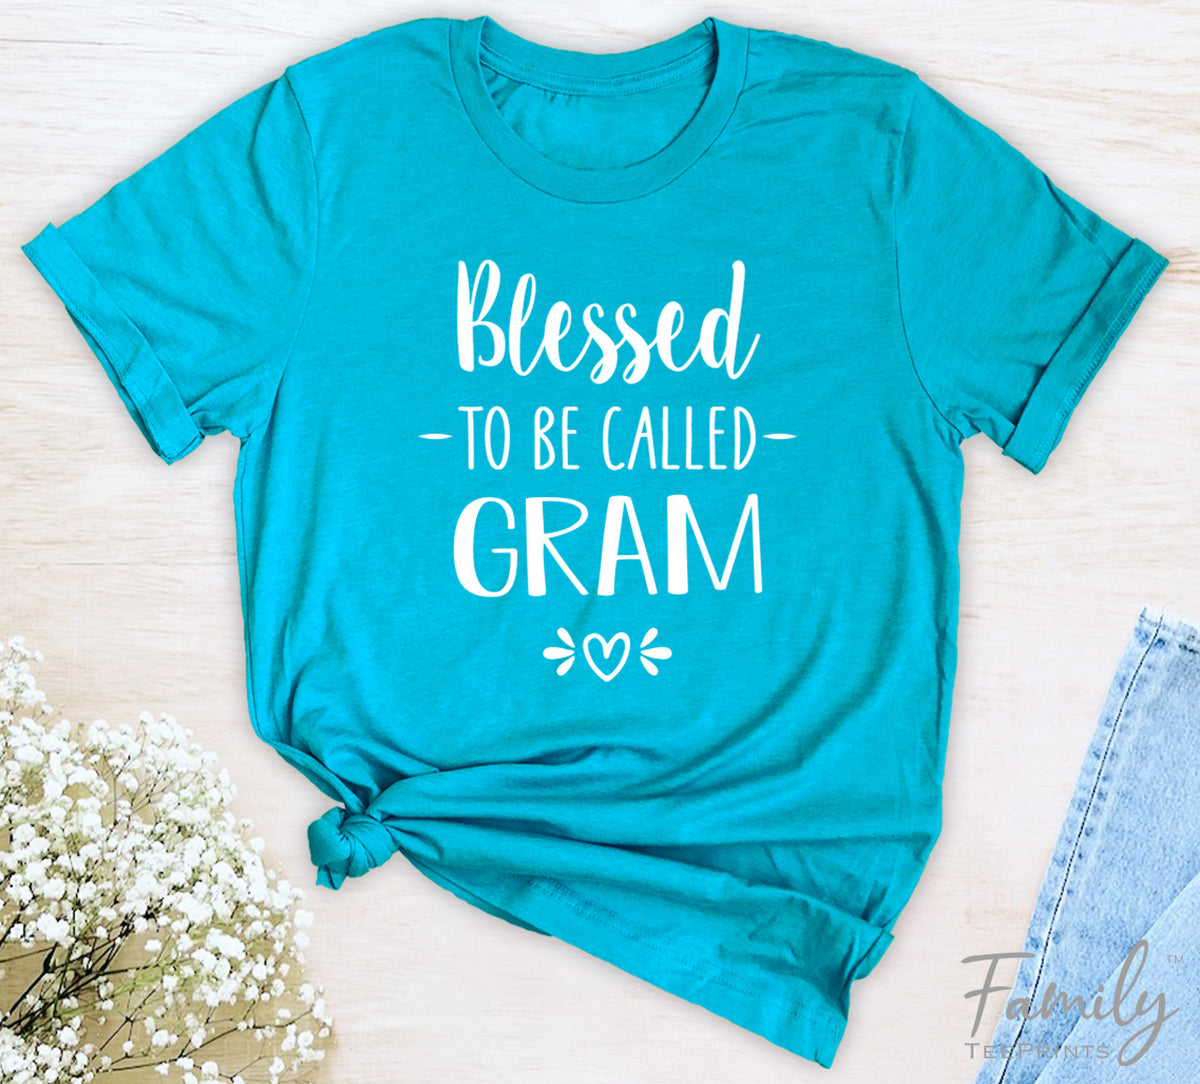 Blessed To Be Called Gram - Unisex T-shirt - Gram Shirt - Gift For New Gram - familyteeprints